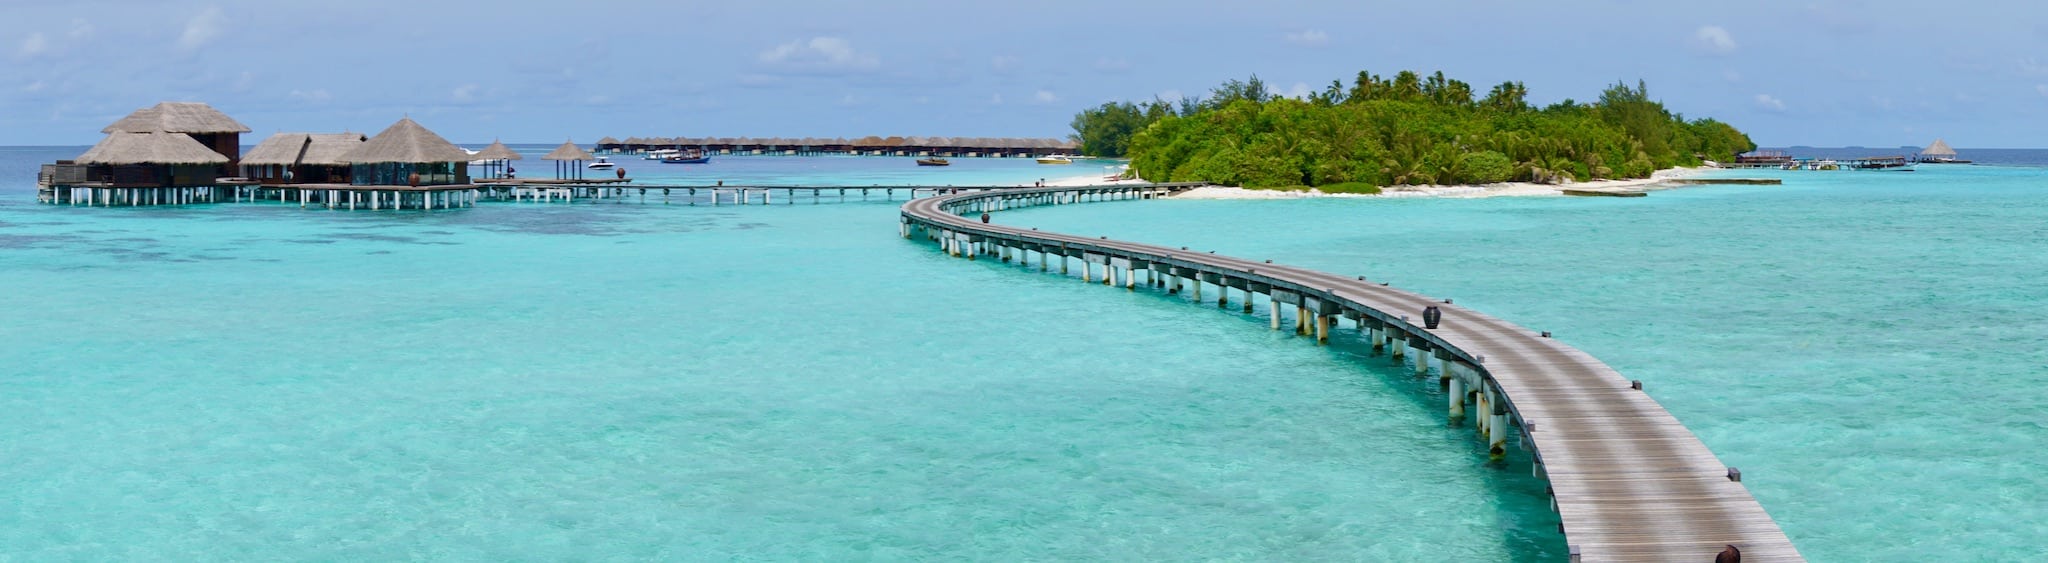 Die Water Villas sind über einen Steg zu erreichen – und natürlich gibt es einen Taxi-Service mit Golf Karts oder Fahrräder. Foto: Sascha Tegtmeyer Reisebericht Malediven Tipps